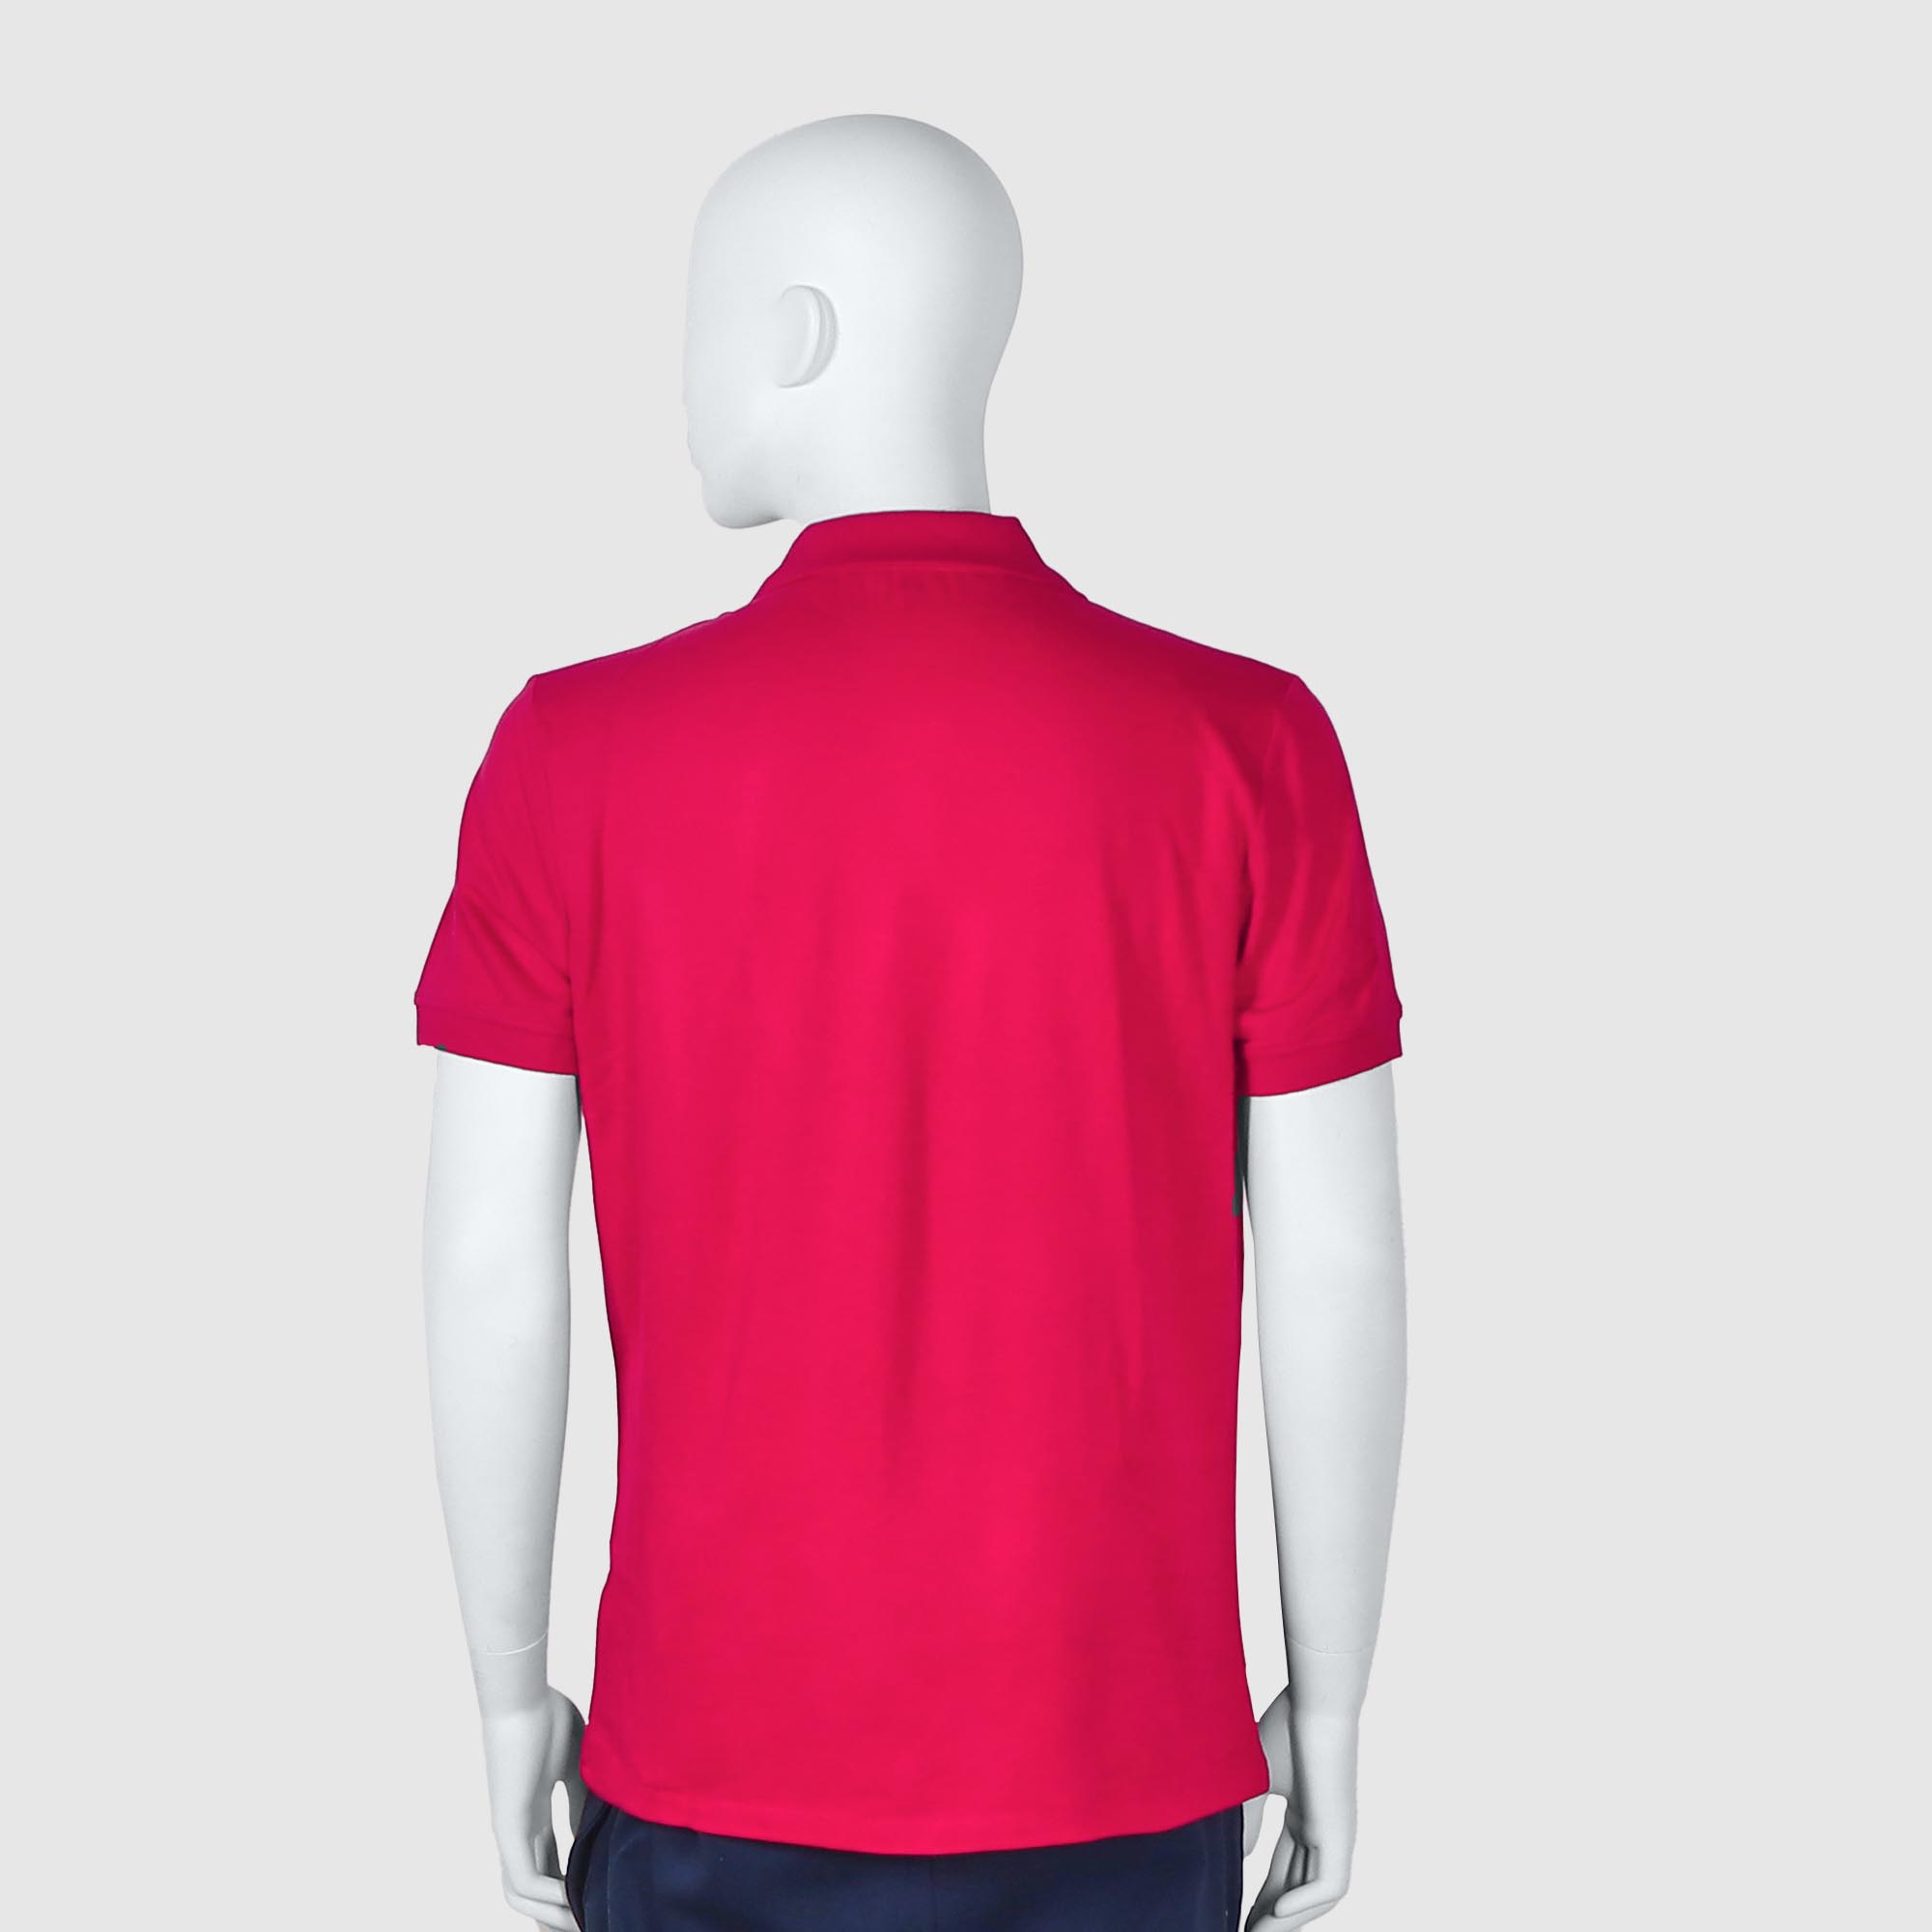 Мужская футболка-поло Diva Teks красная (DTD-08), цвет красный, размер 54-56 - фото 2